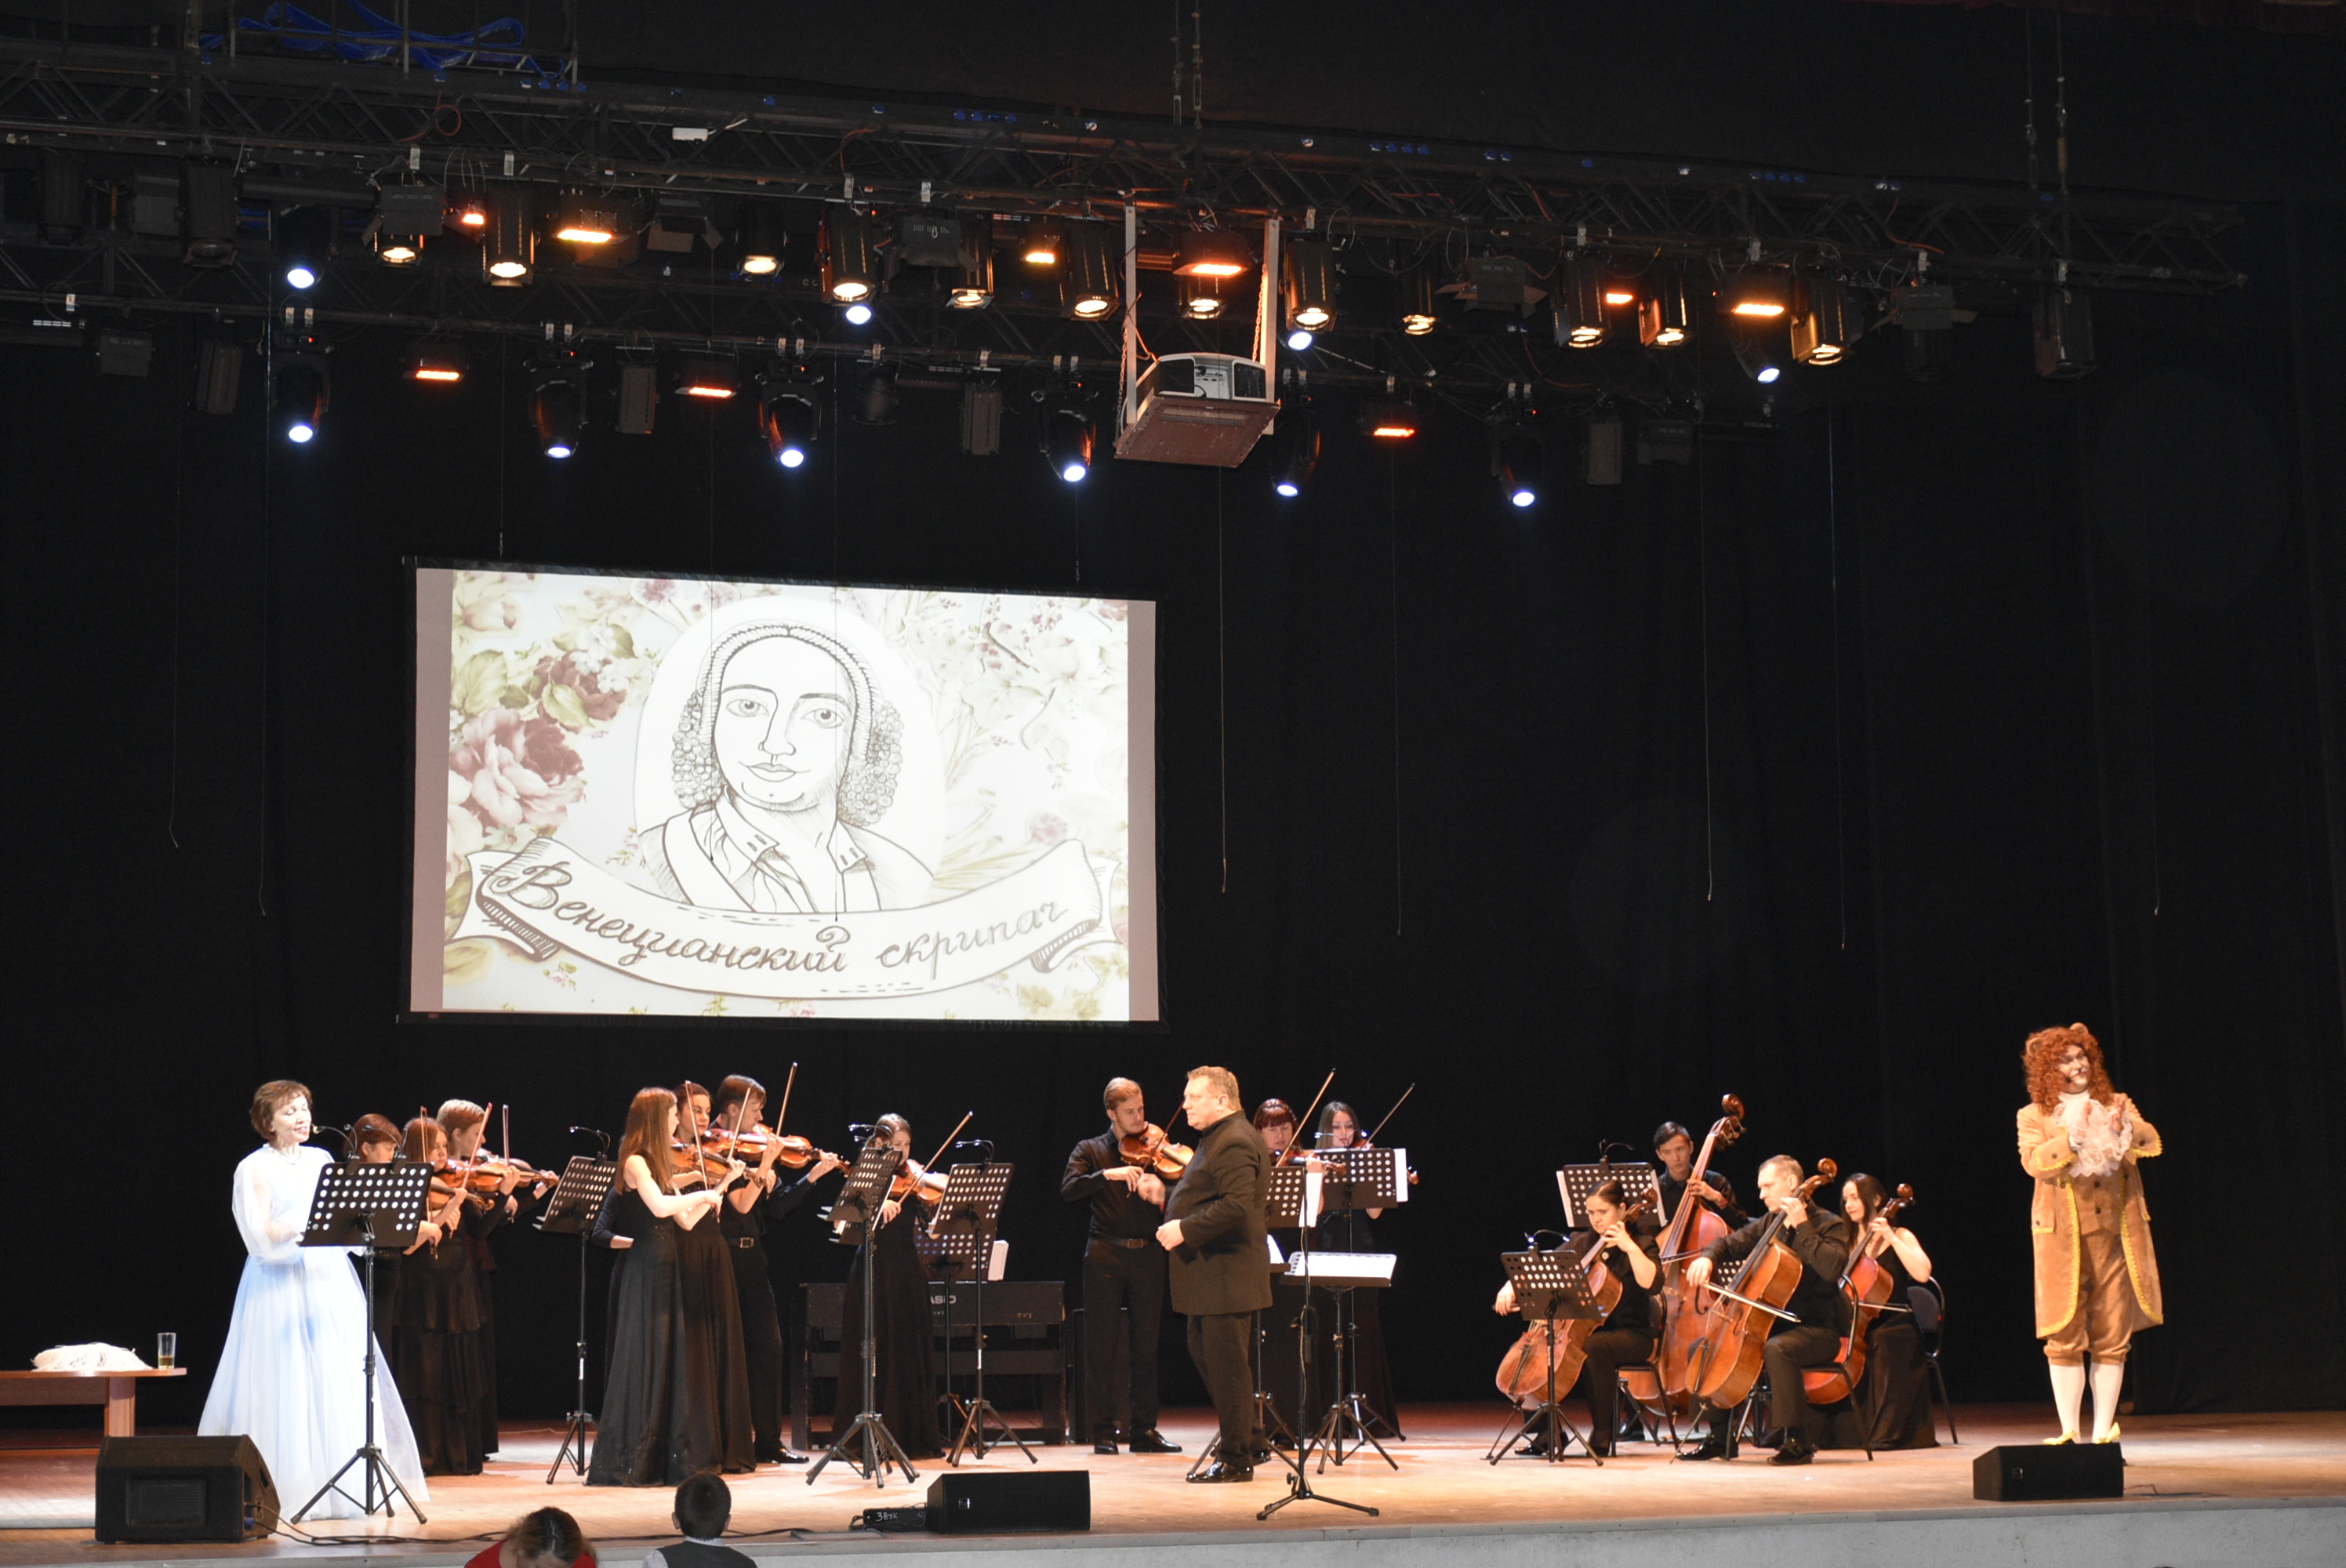 Благотворительный концерт-карнавал &amp;quot;Венецианский скрипач&amp;quot;. г. Рязань. 29 октября 2022 года..